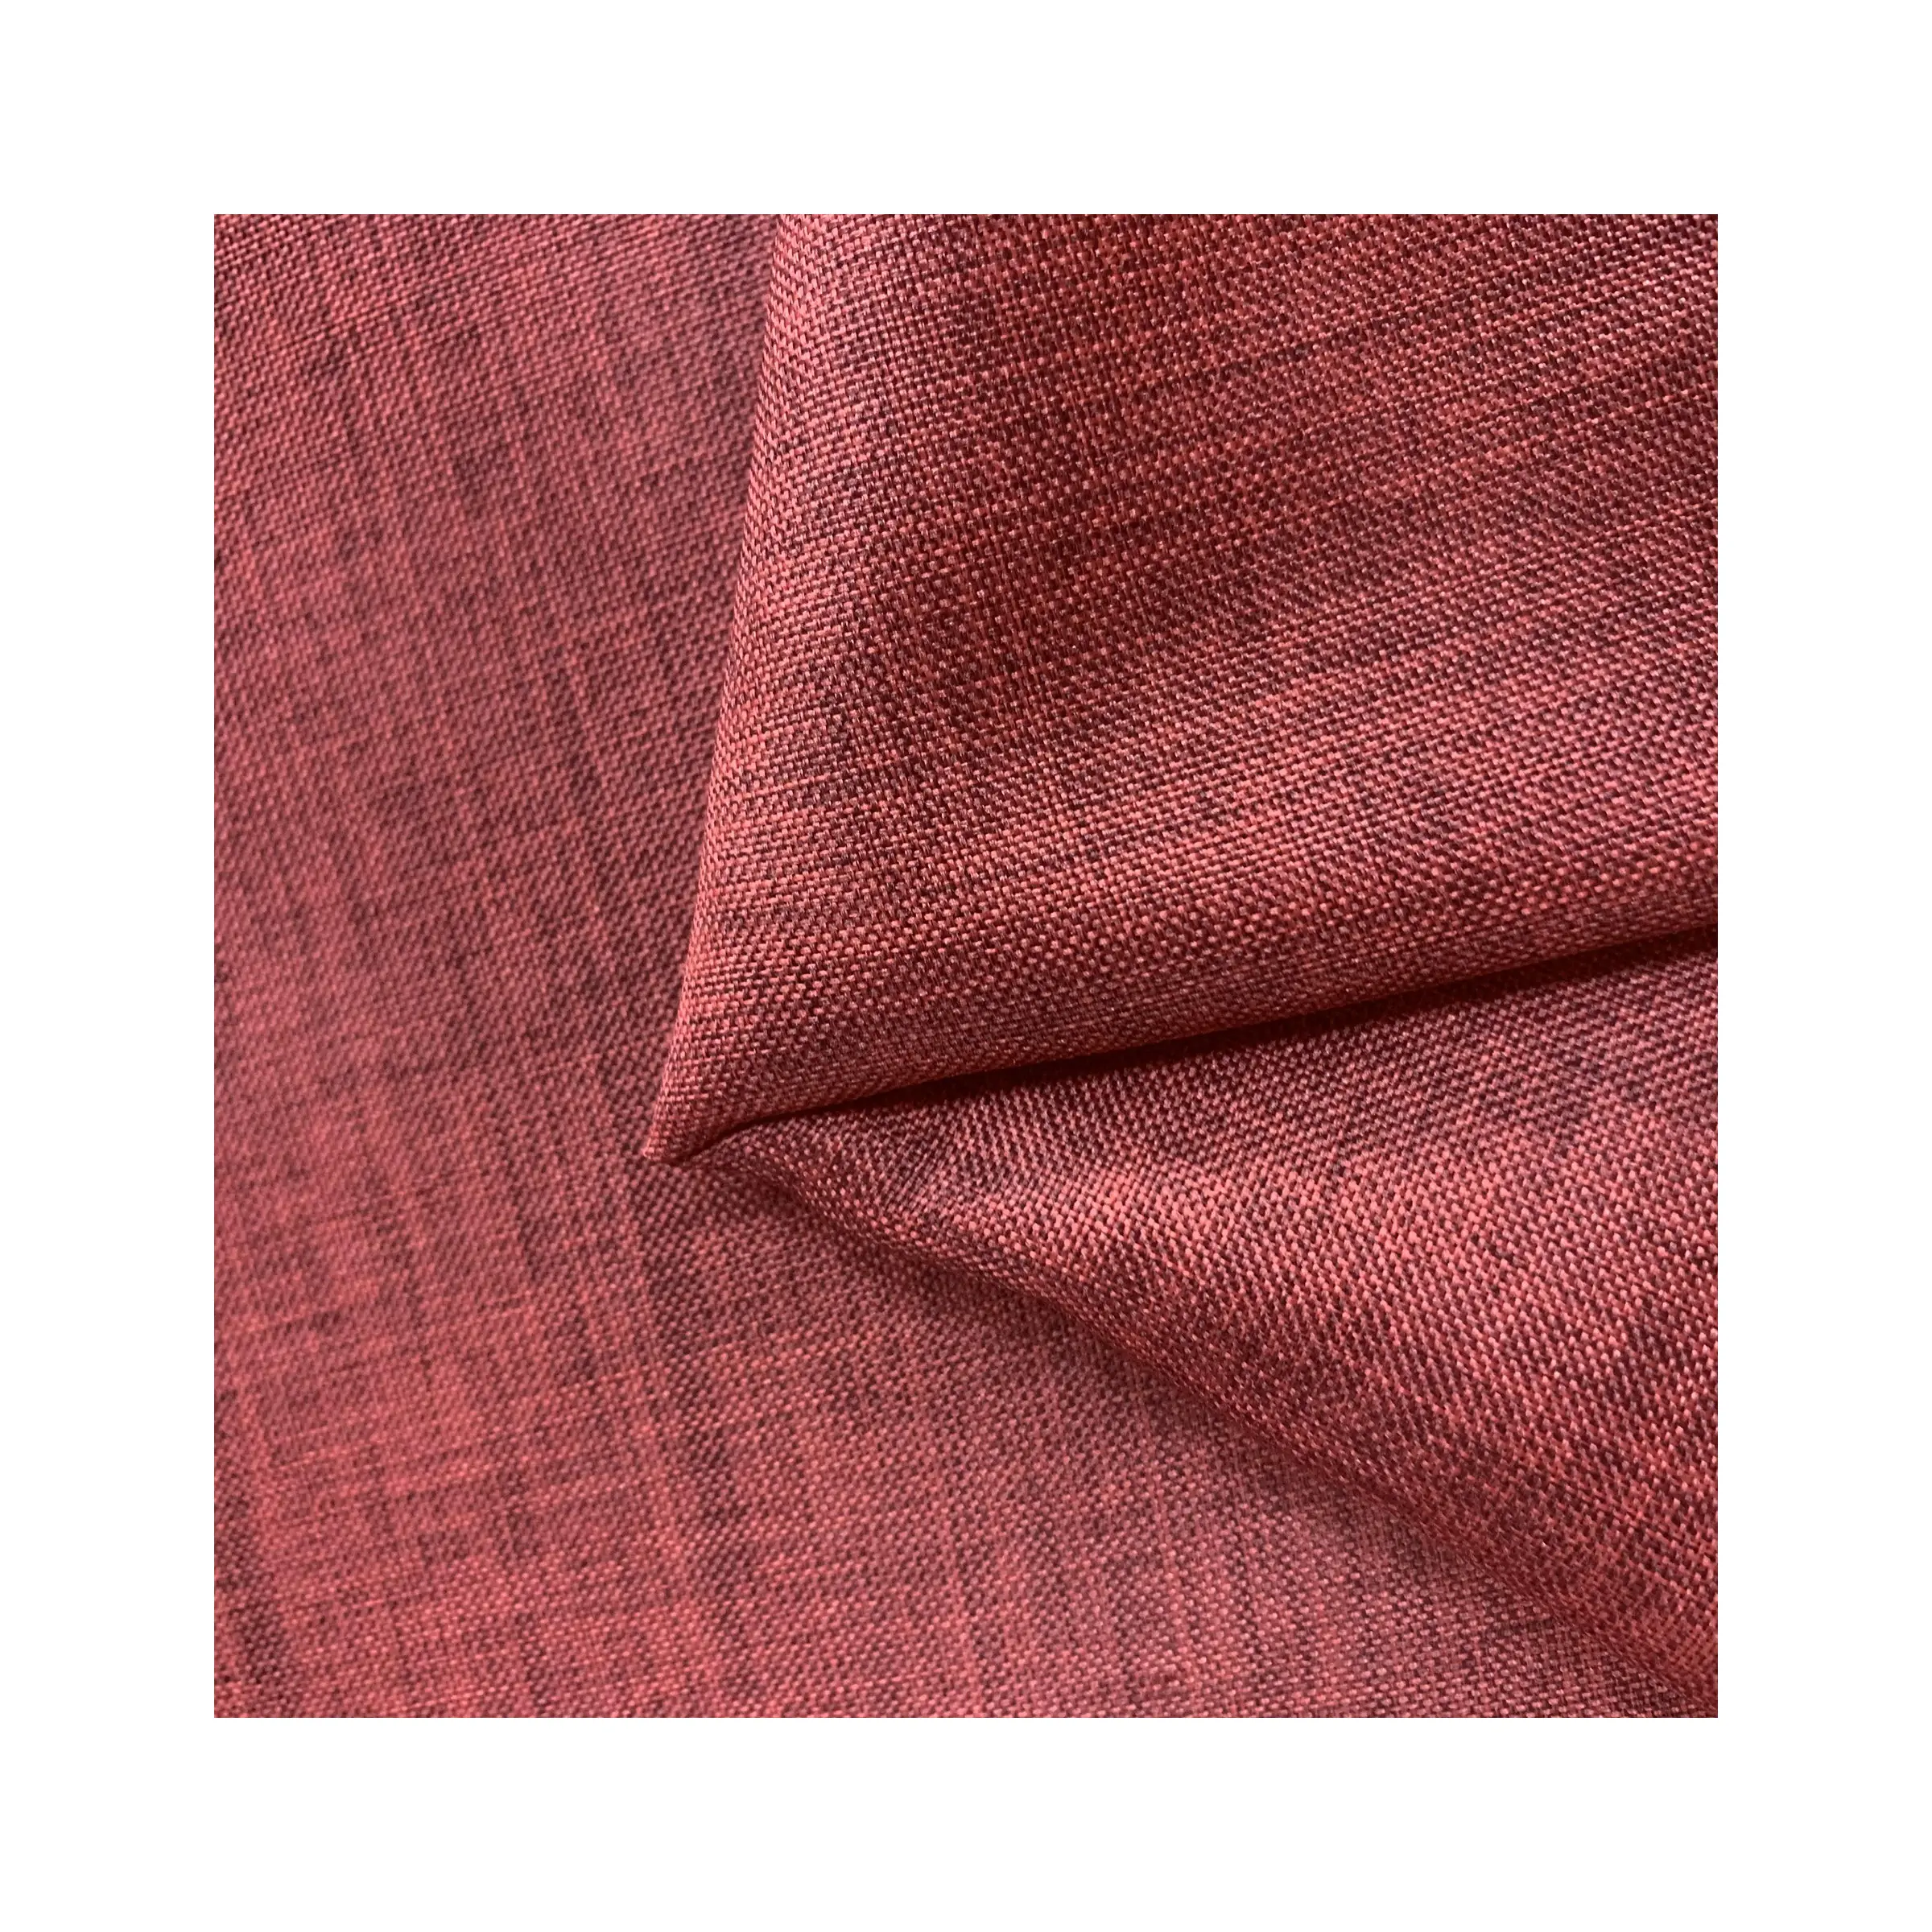 Holesale-tela de aspecto de lino para el hogar, tejido de sofá para muebles